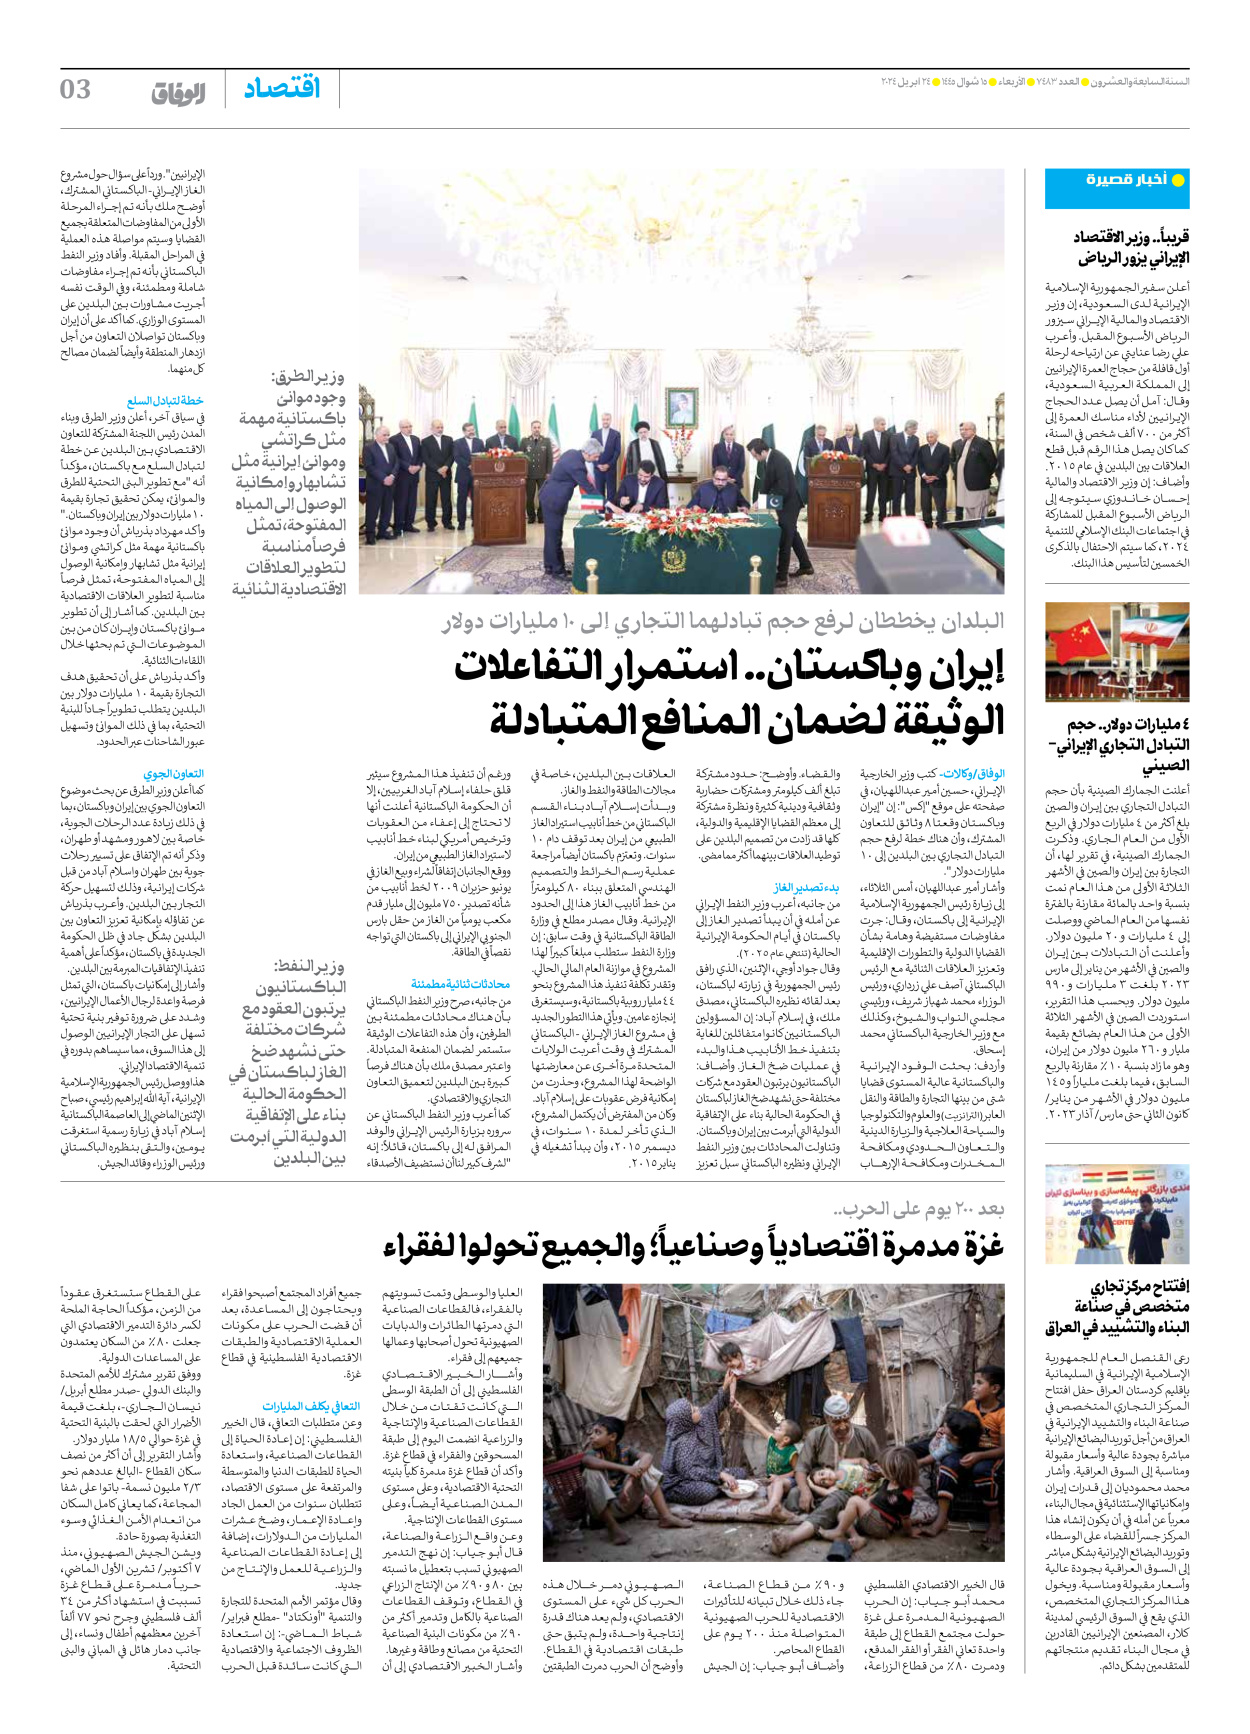 صحیفة ایران الدولیة الوفاق - العدد سبعة آلاف وأربعمائة وثلاثة وثمانون - ٢٤ أبريل ٢٠٢٤ - الصفحة ۳